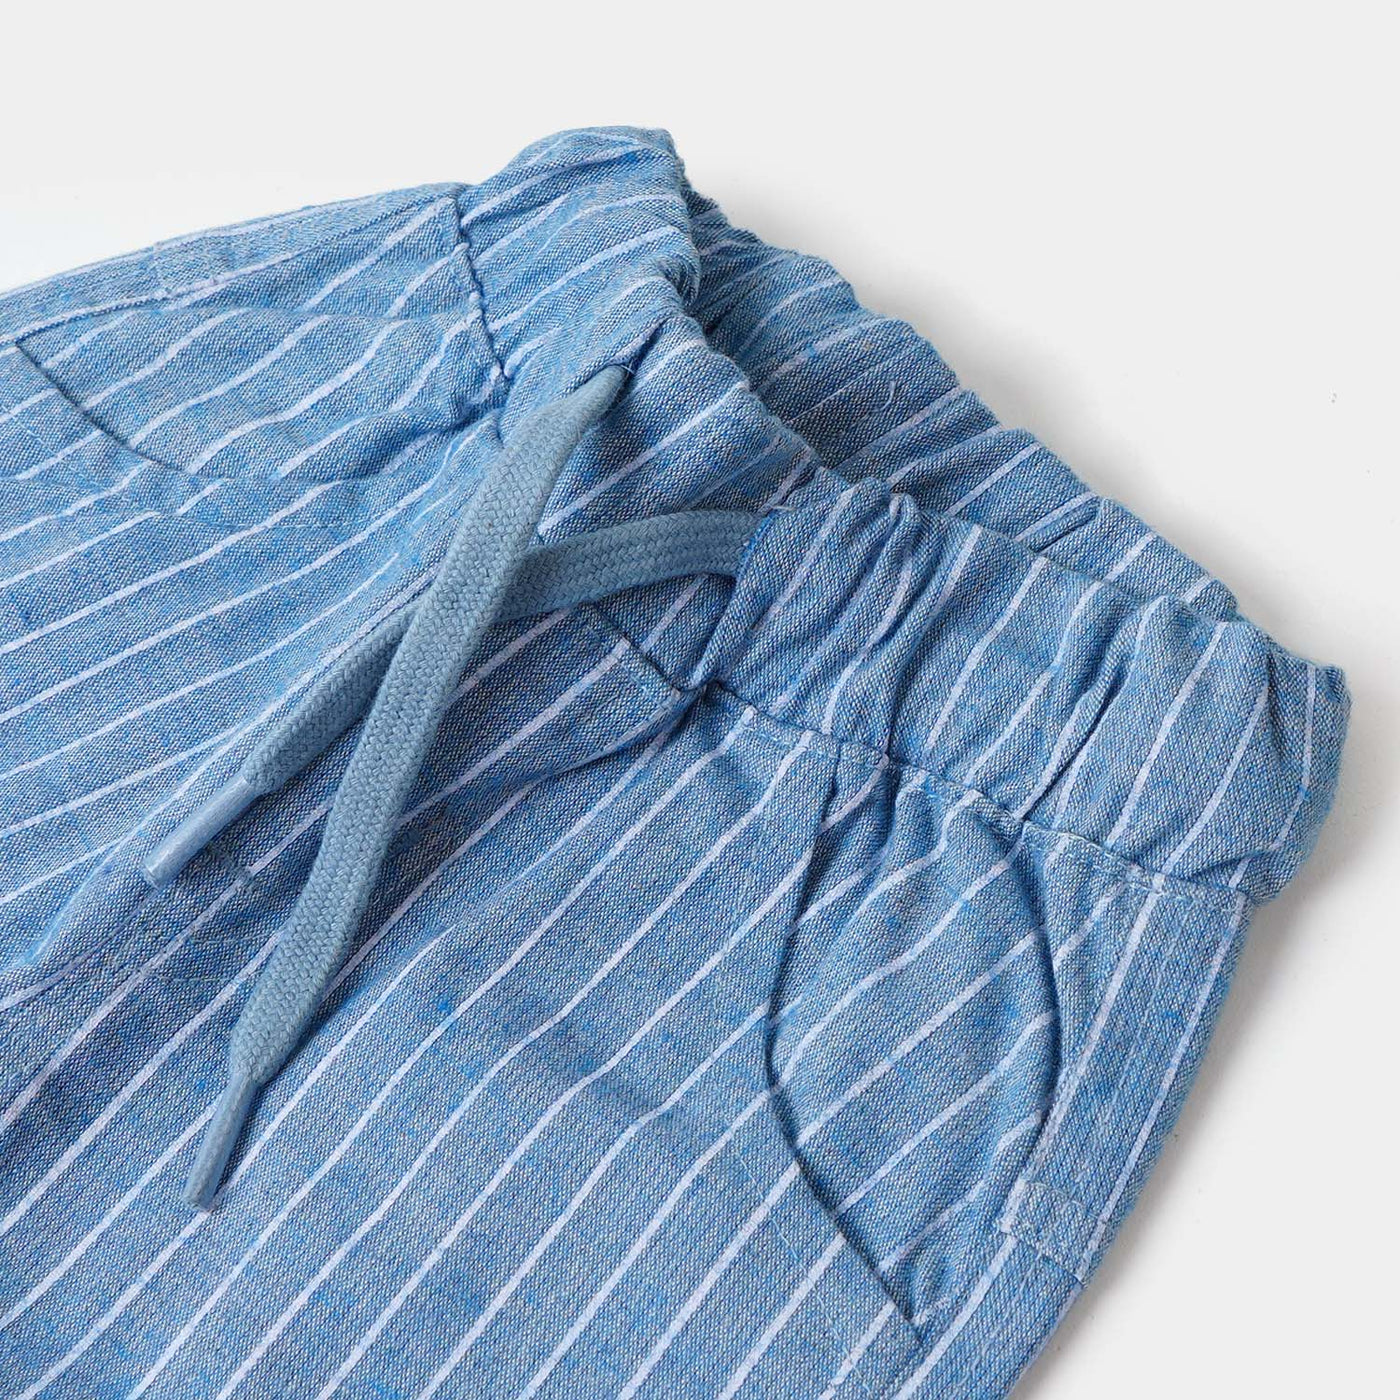 Infant Boys Suit 2 Pcs F22/S2 - Blue/white